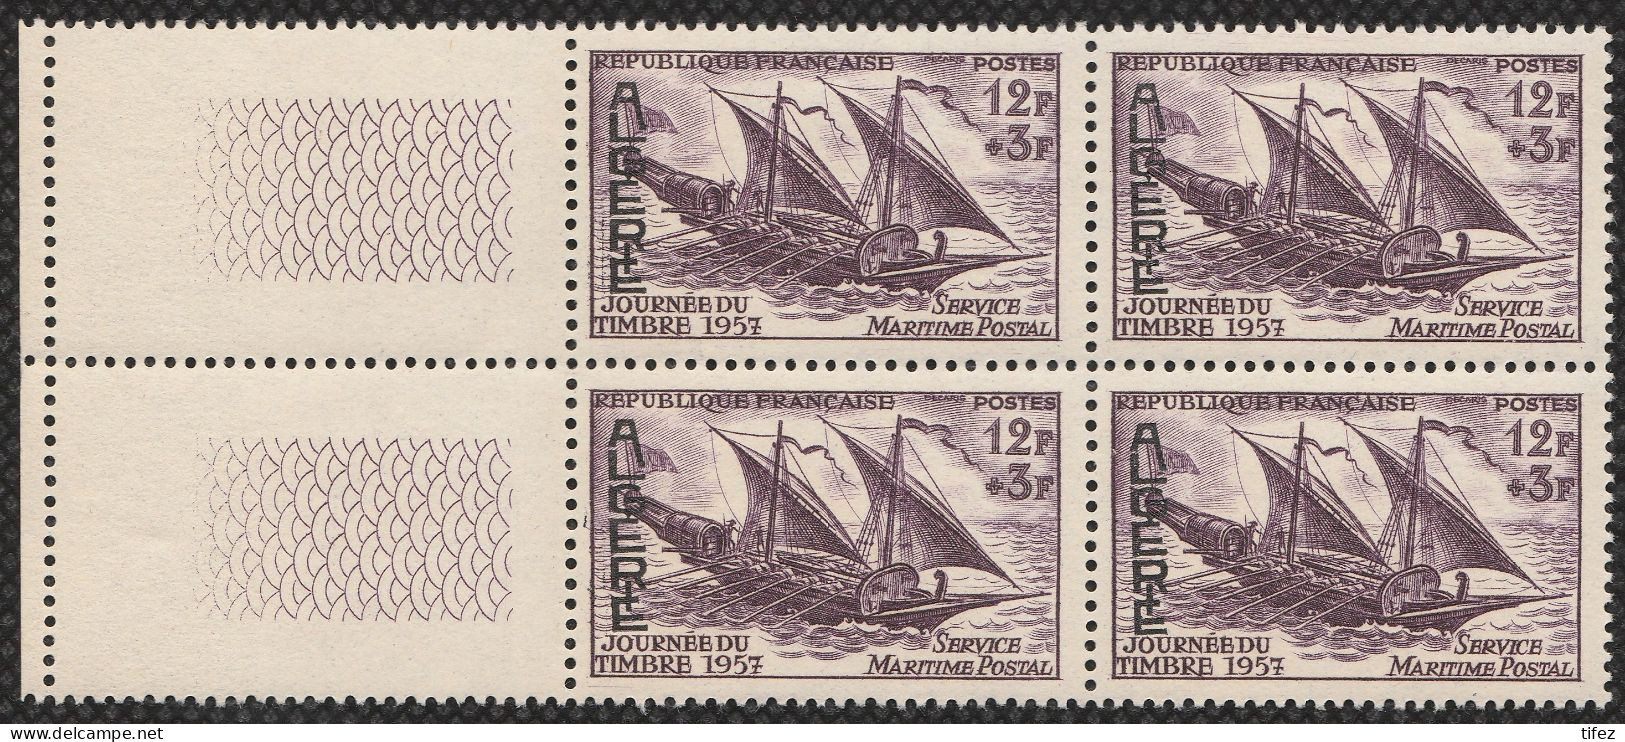 Année 1957-N°342 Neufs**MNH : Journée Du Timbre -Service Maritime Postal (bateau) Bloc De 4  (g-1) - Neufs